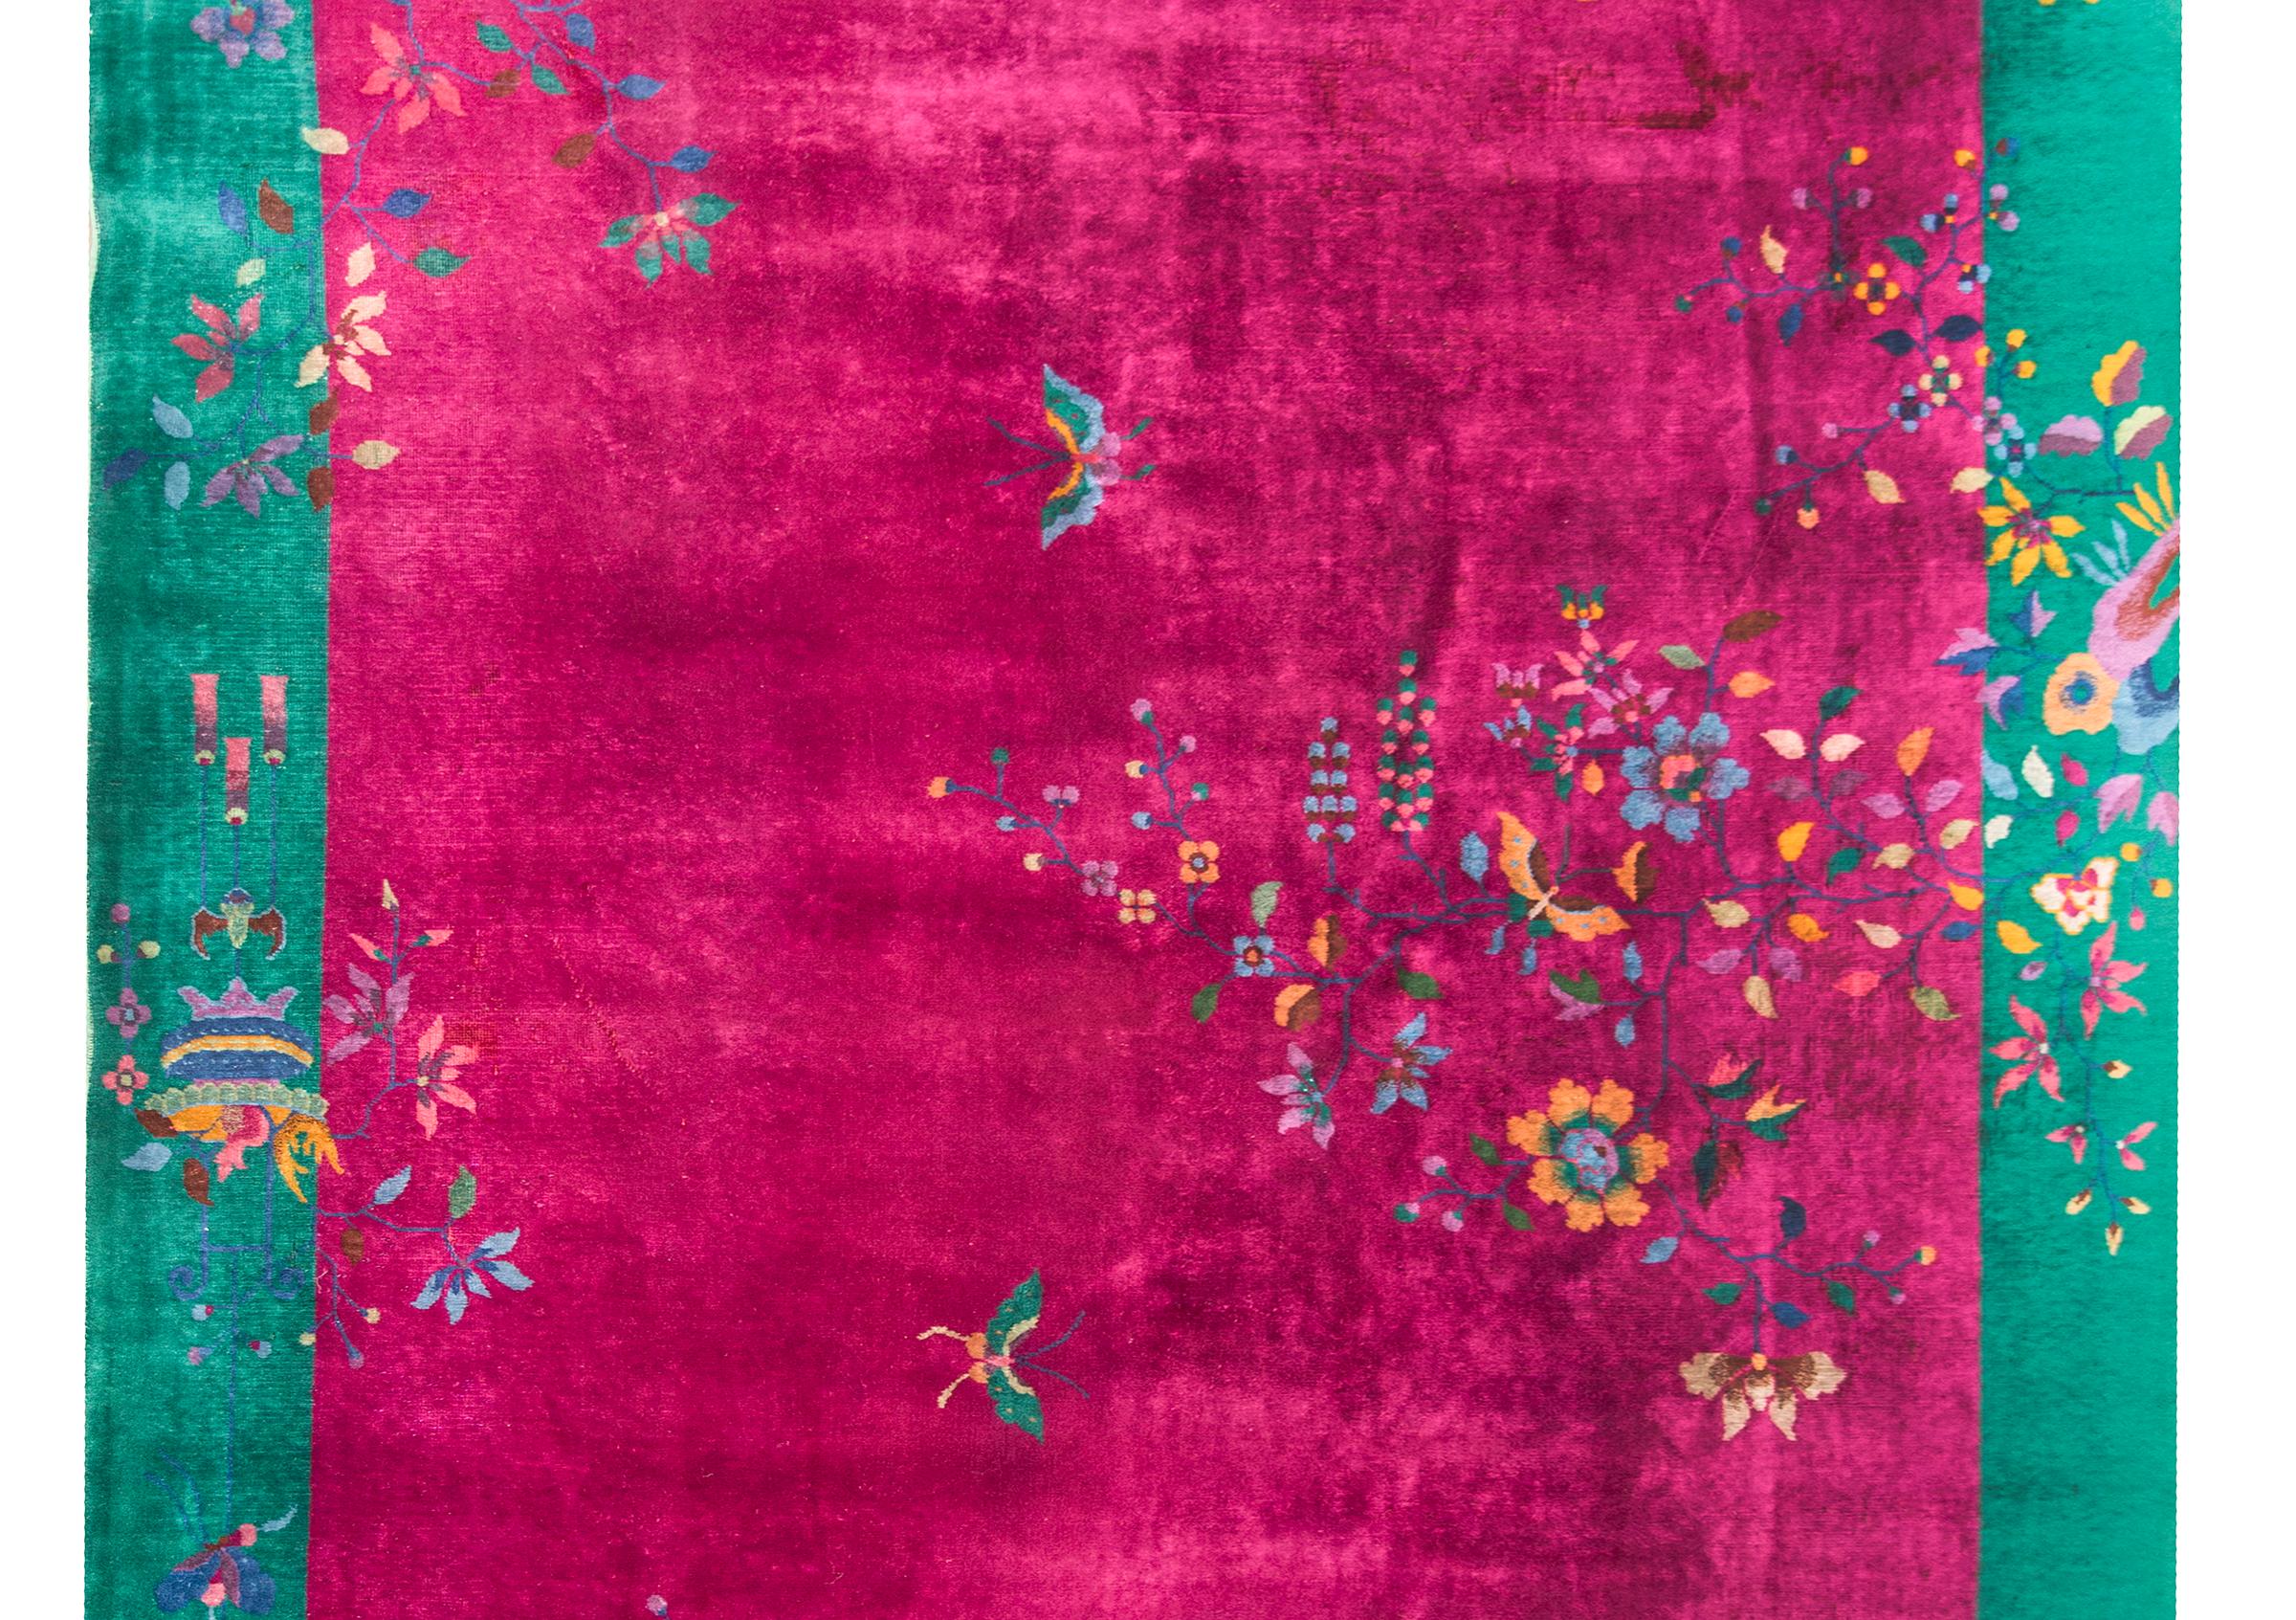 Ein wunderschöner chinesischer Art-Déco-Teppich aus dem frühen 20. Jahrhundert mit einem kräftigen fuchsiafarbenen Grund, auf dem unzählige verheißungsvolle Pfingstrosen und Blumen sowie Schmetterlinge in leuchtenden Rosa-, Indigo-, Gold- und